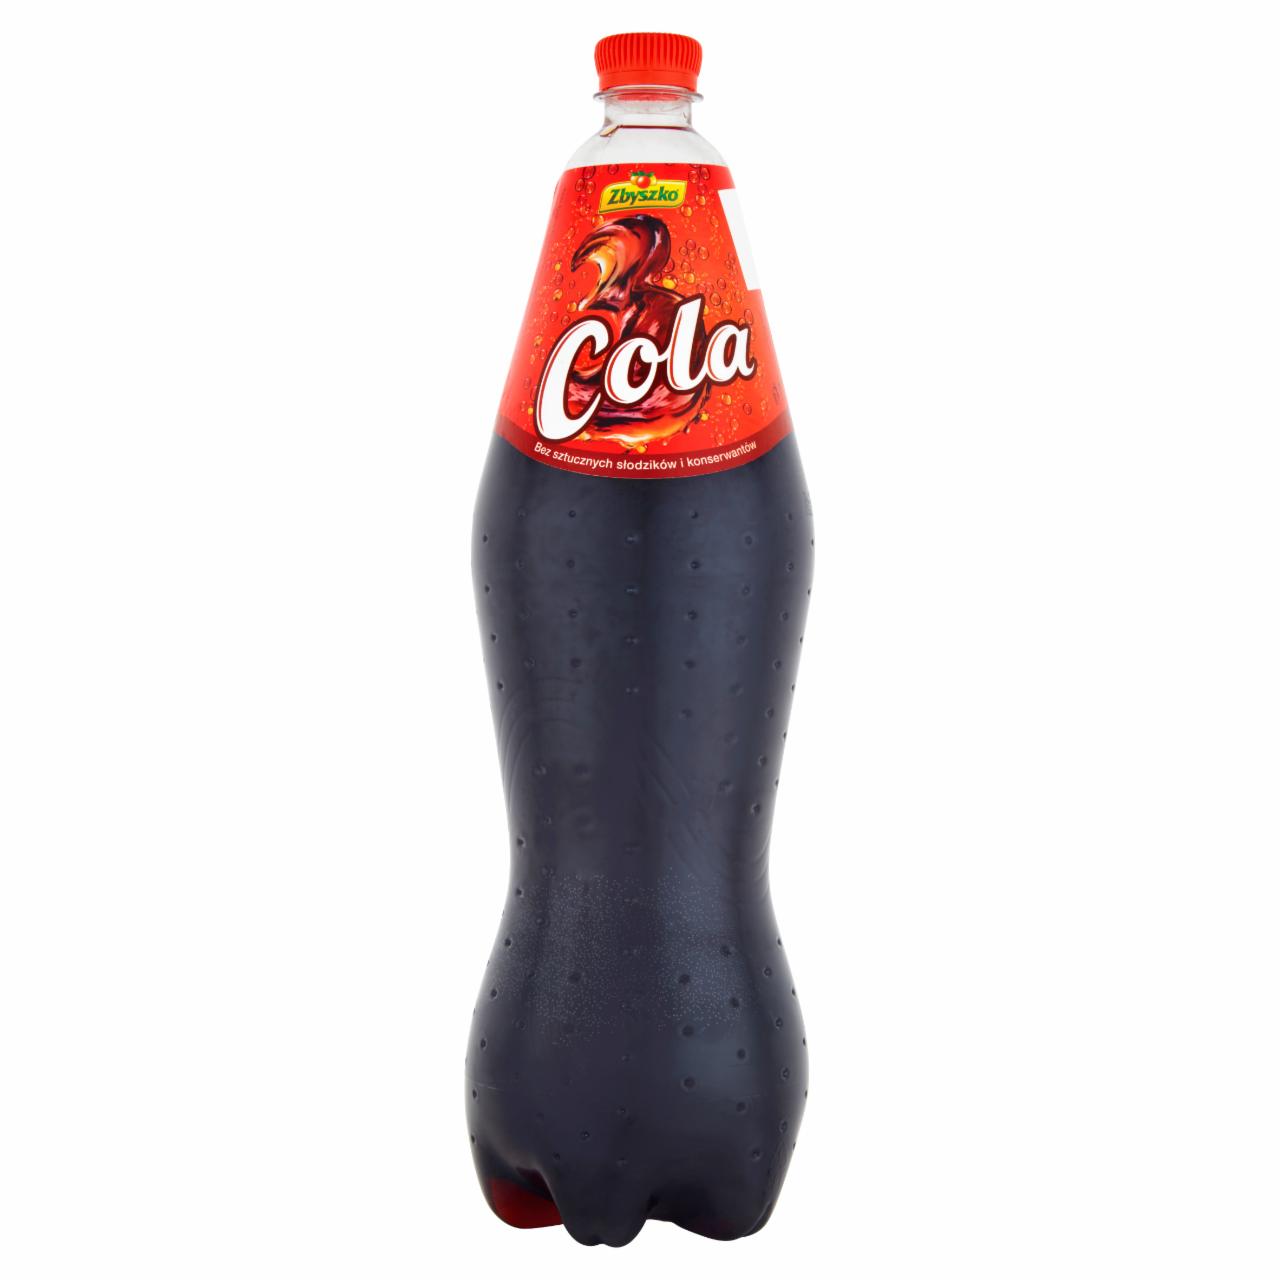 Zdjęcia - Zbyszko Cola Napój gazowany 1,75 l